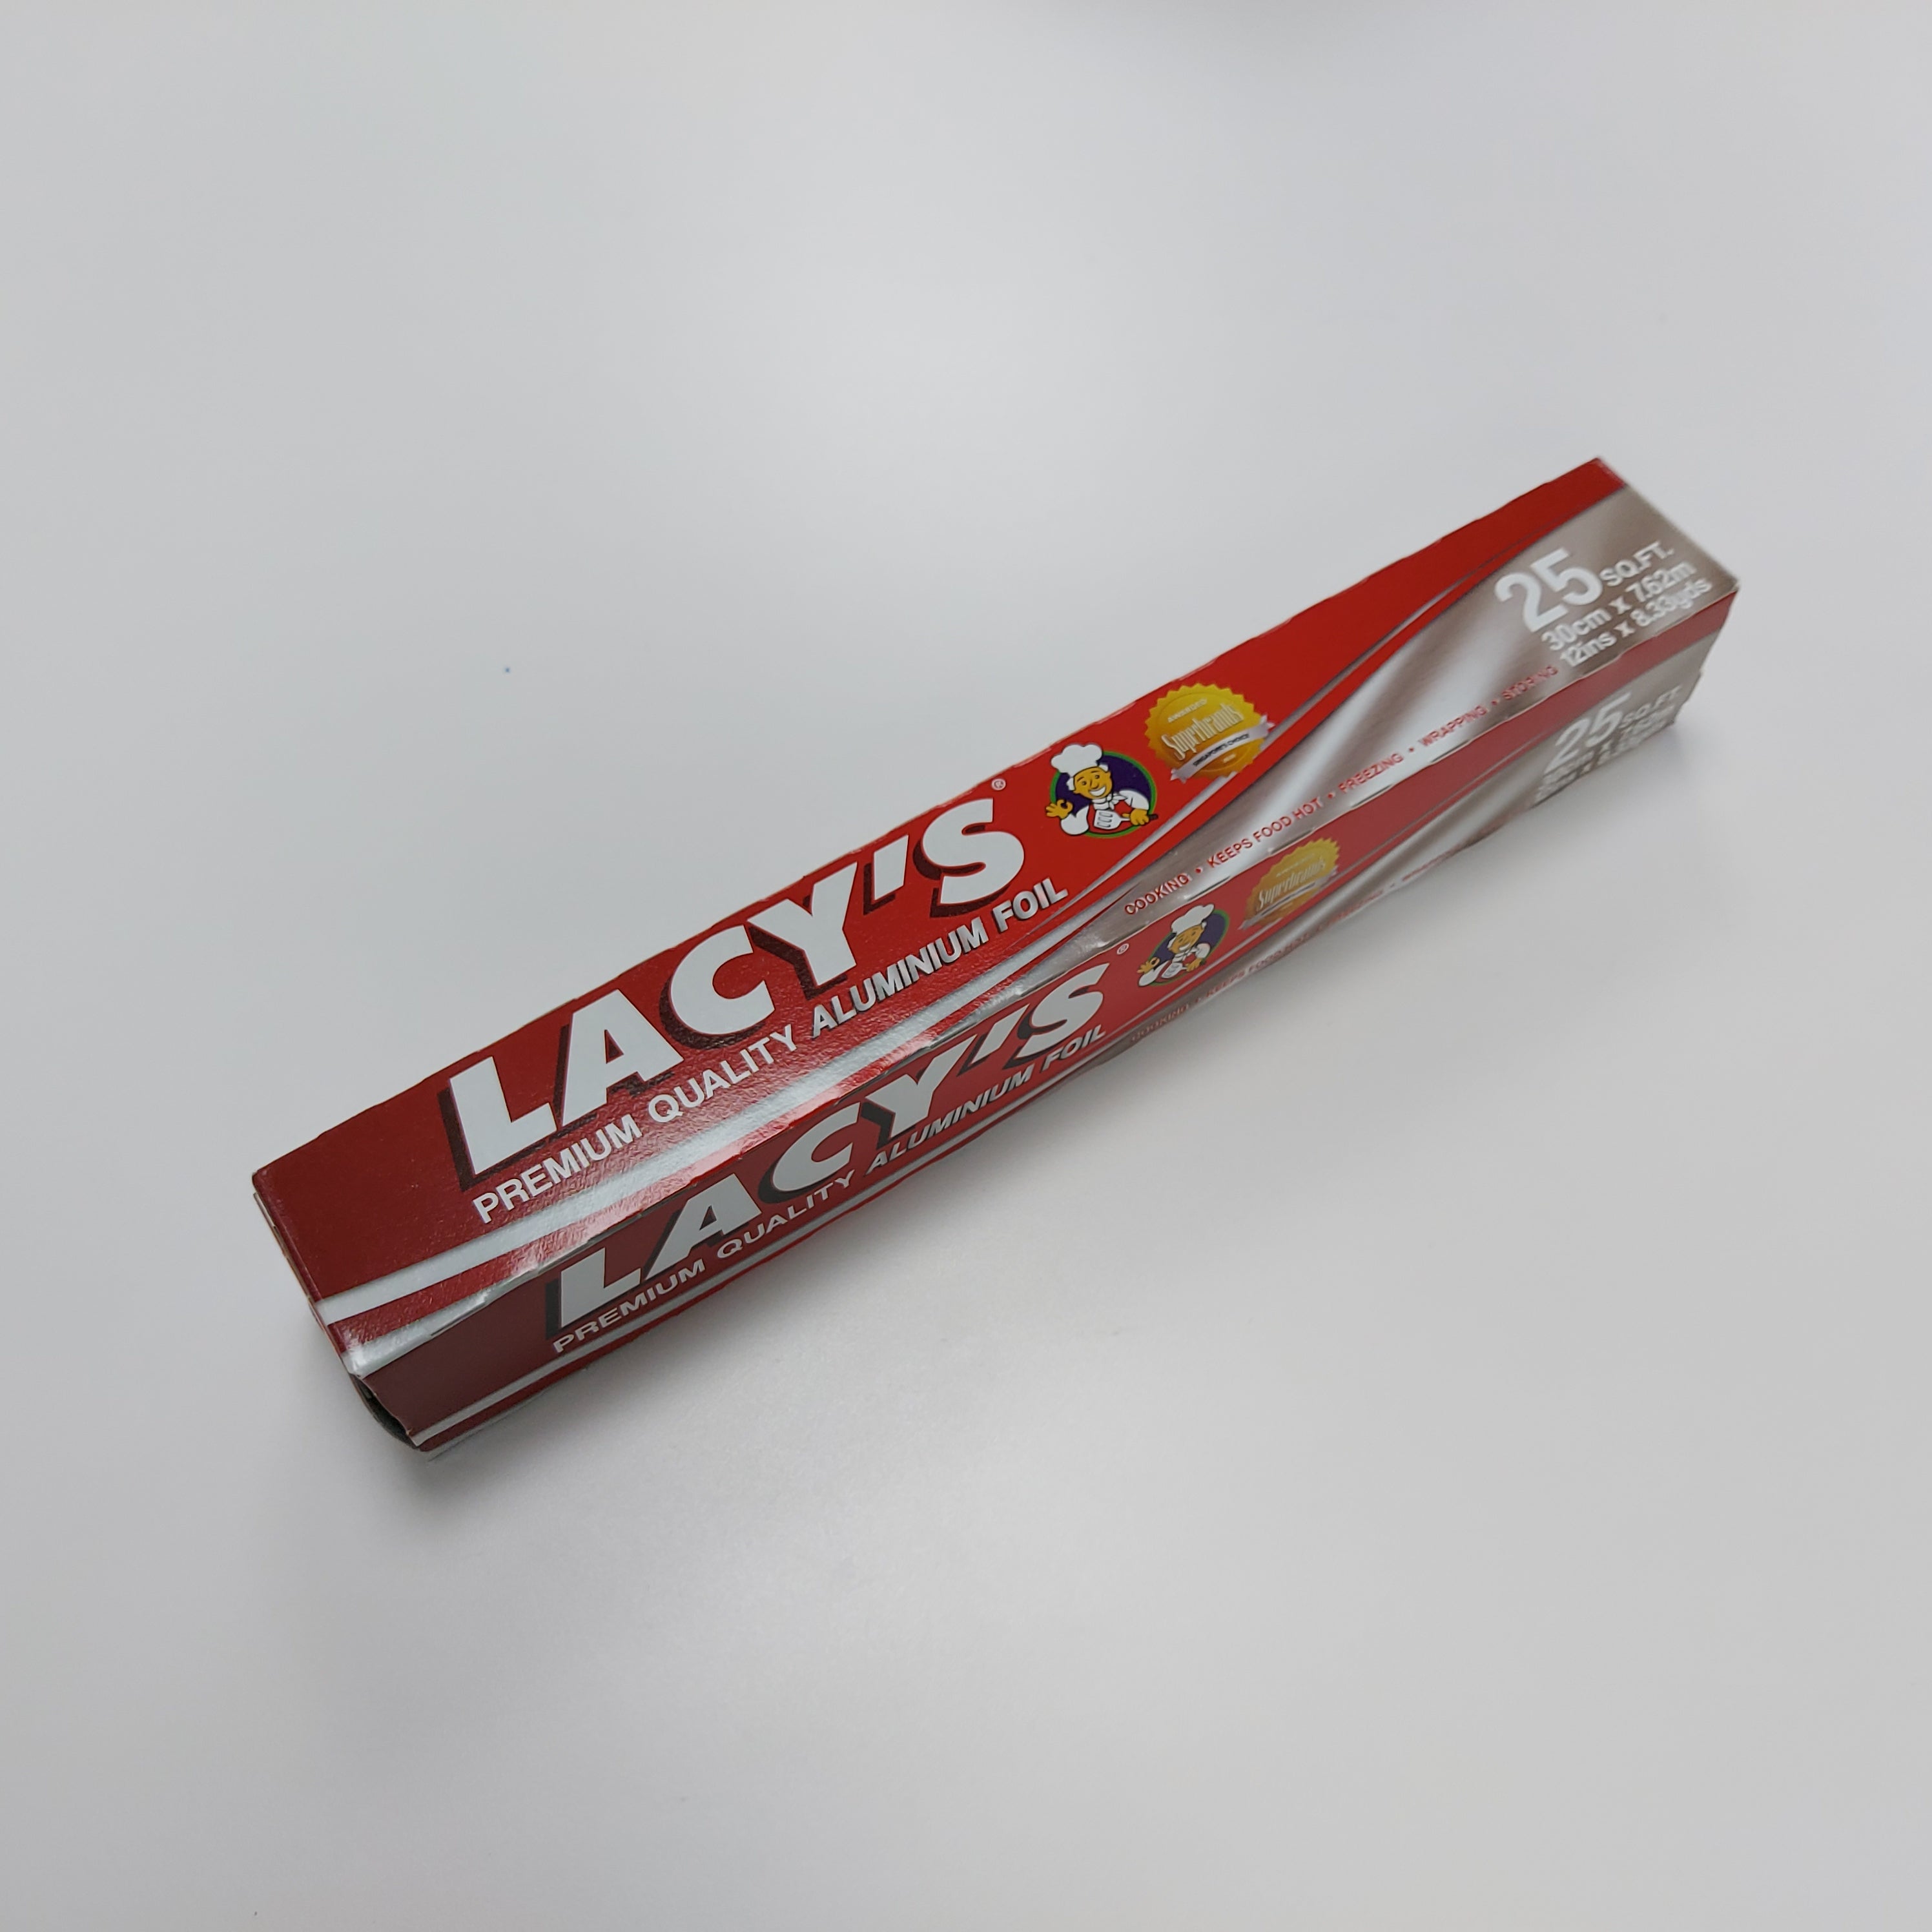 Lacy's Aluminium Foil